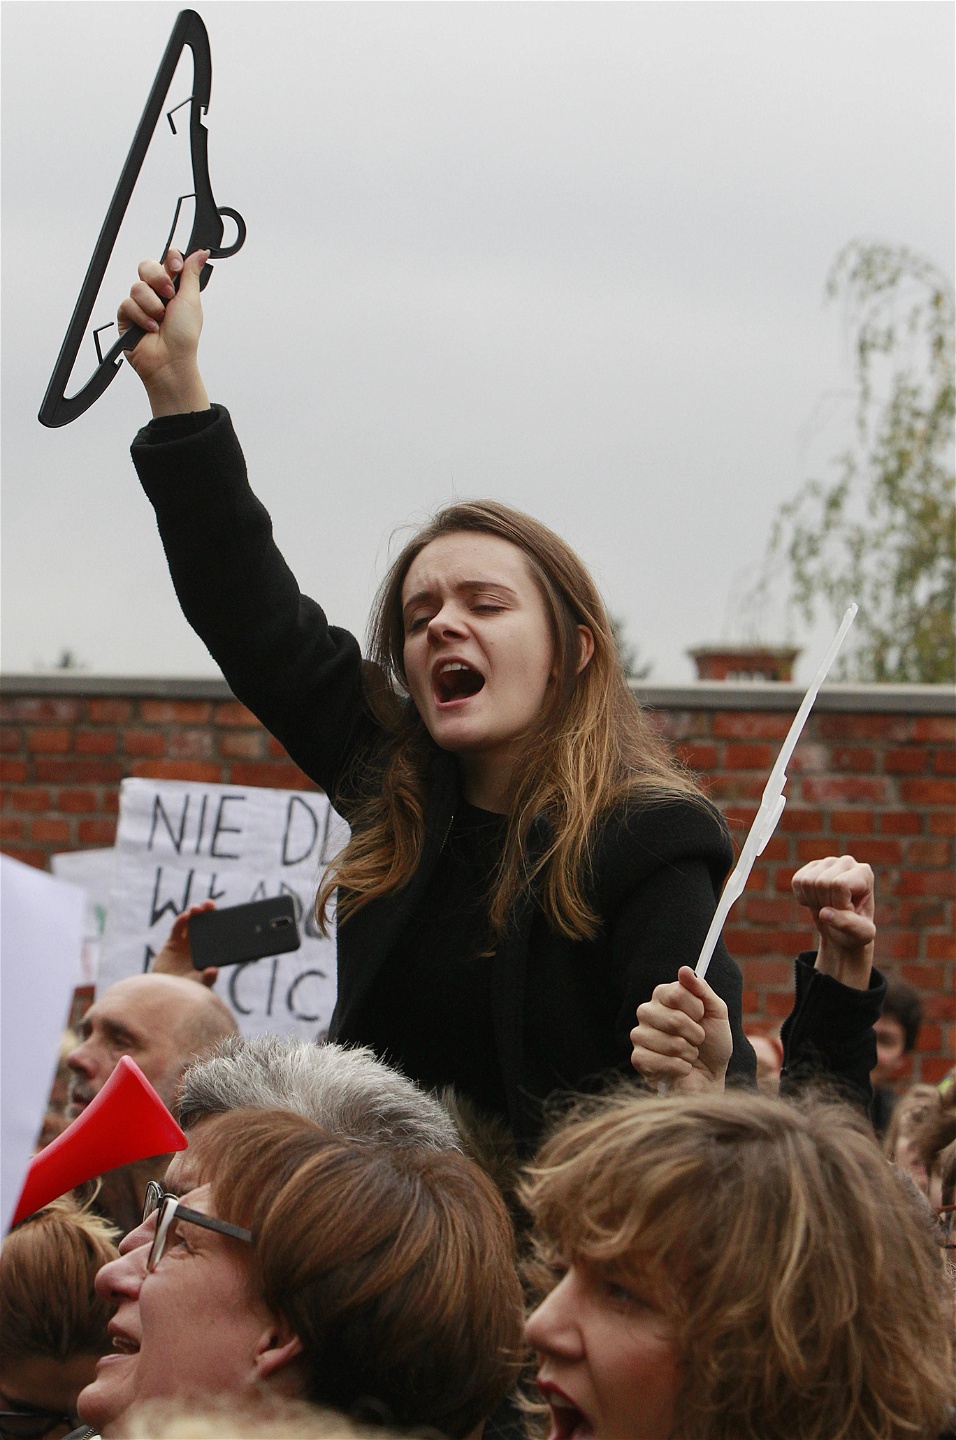 En polsk kvinna skriker slagord hållandes i en galge, symbolen för illegala aborter, vid demonstrationen i Warszawa i måndags.